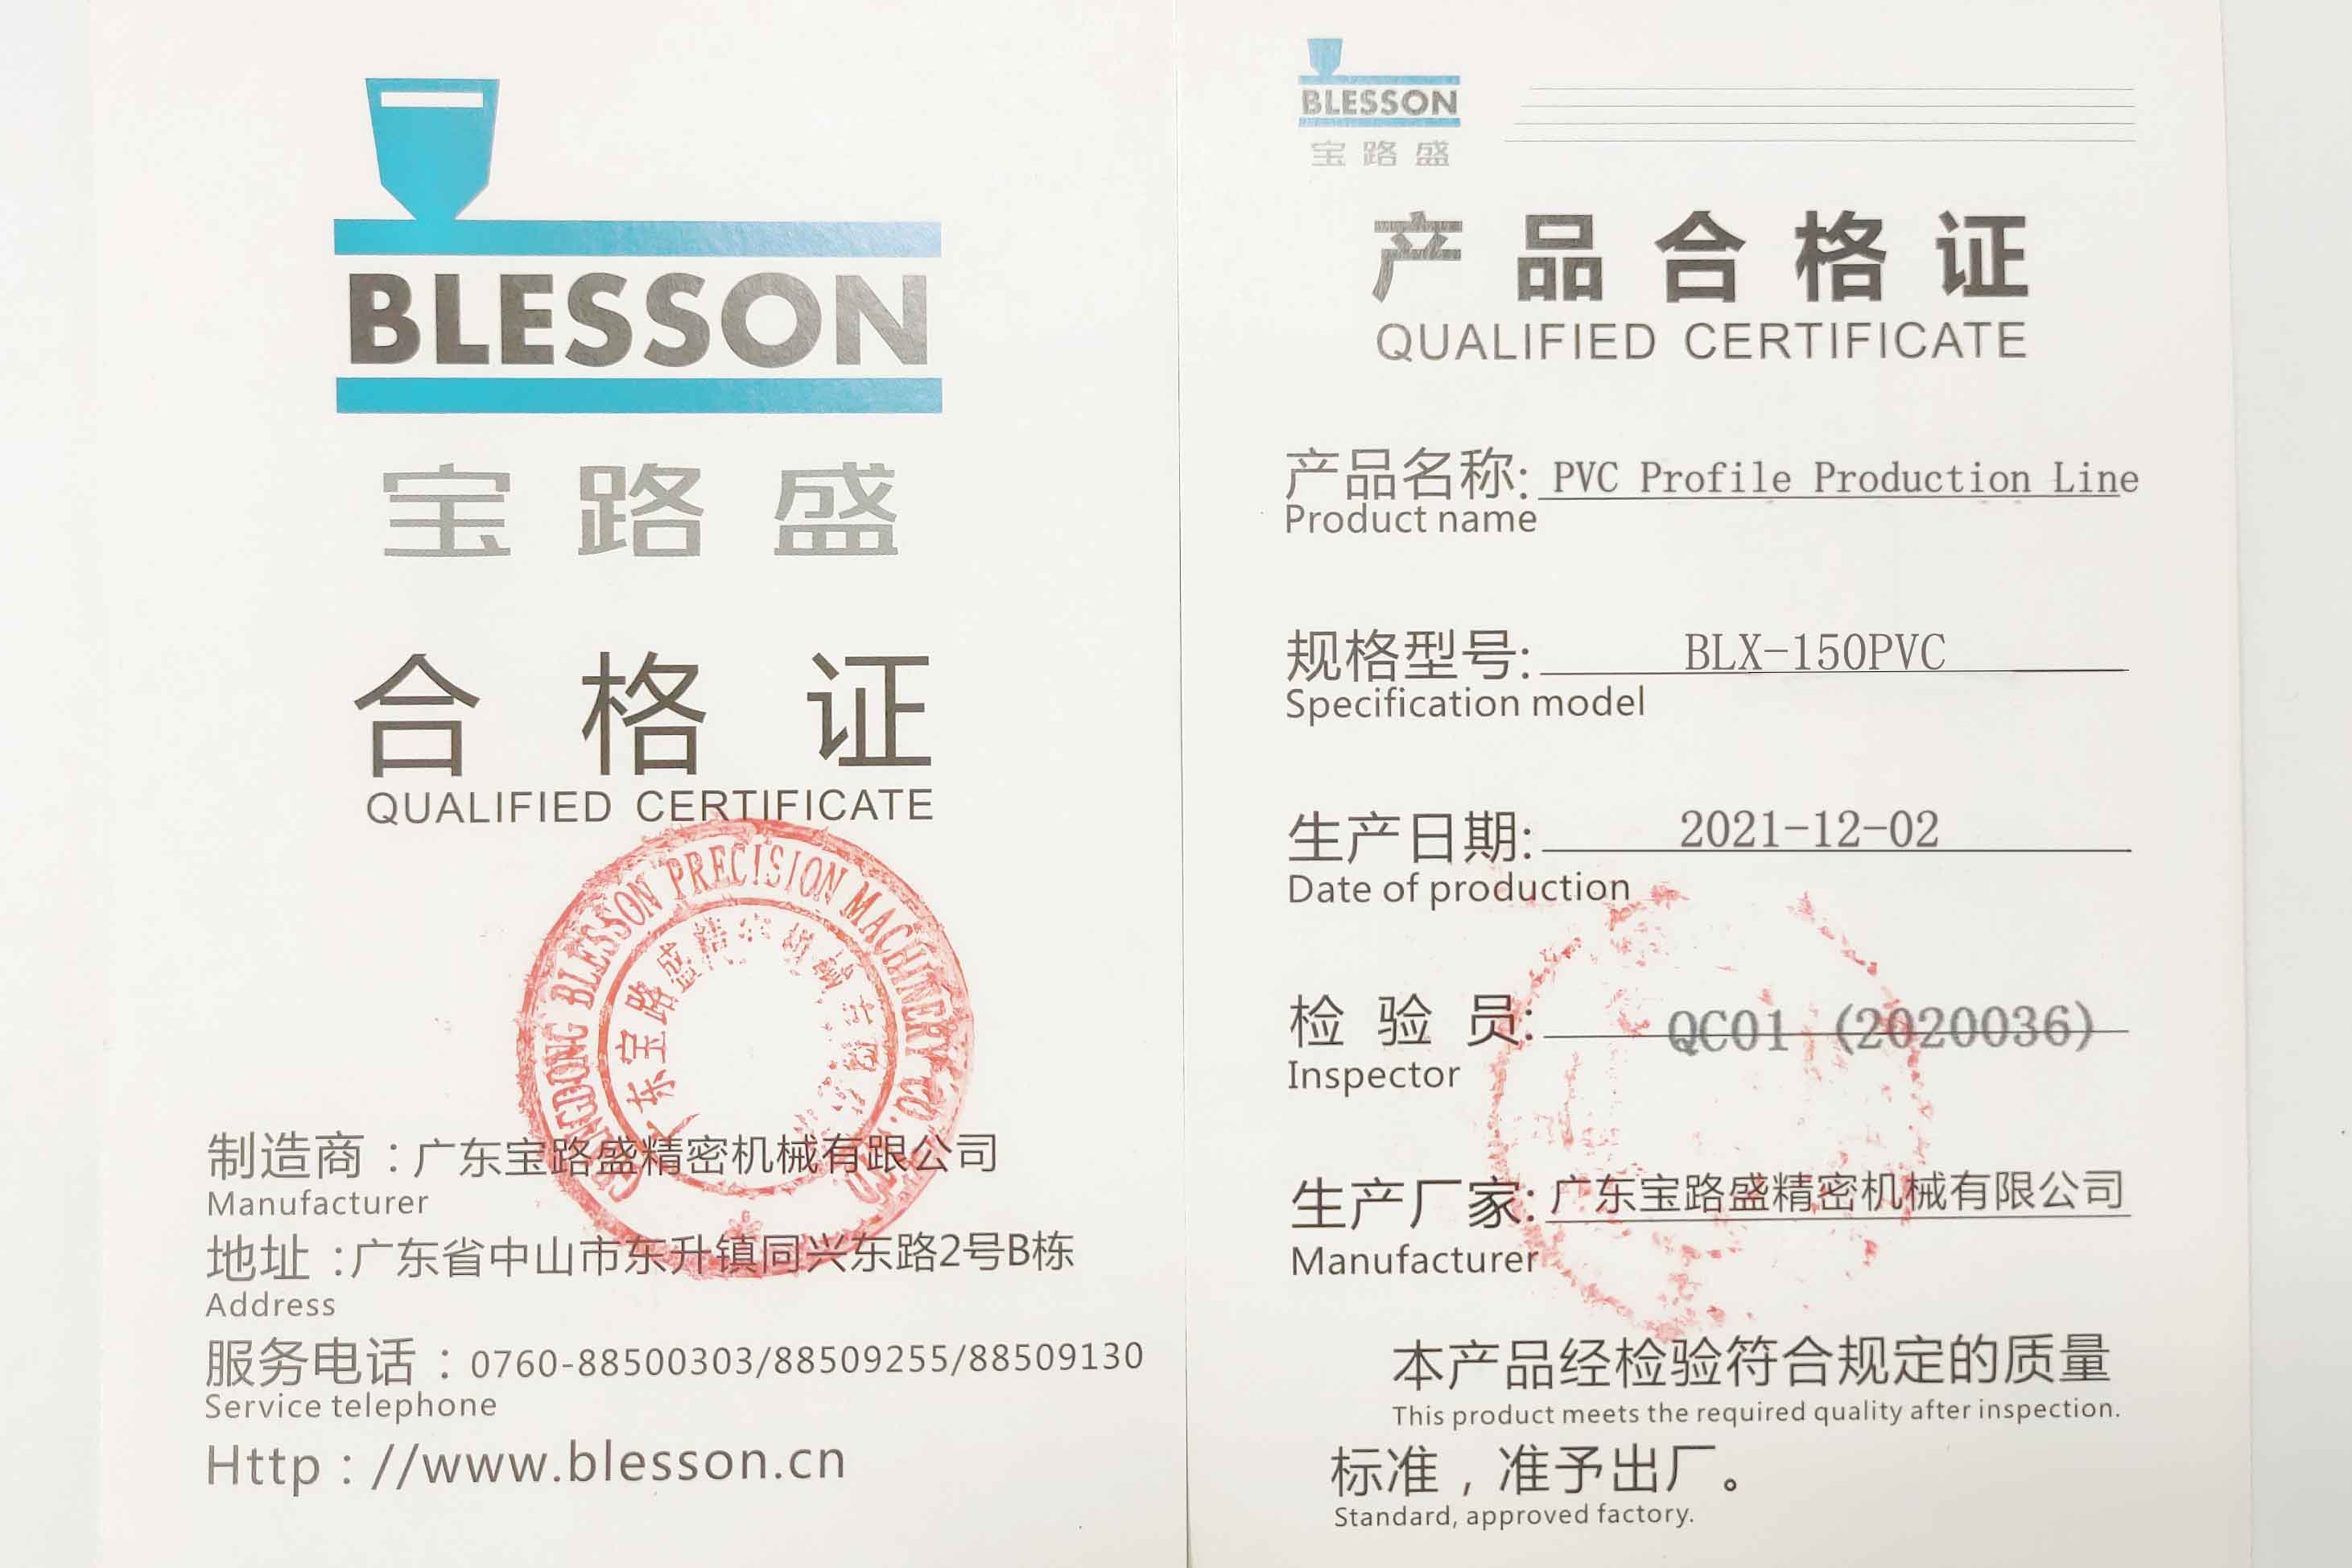 Certificat de producte de la línia de producció de perfils de PVC de Blesson Machinery